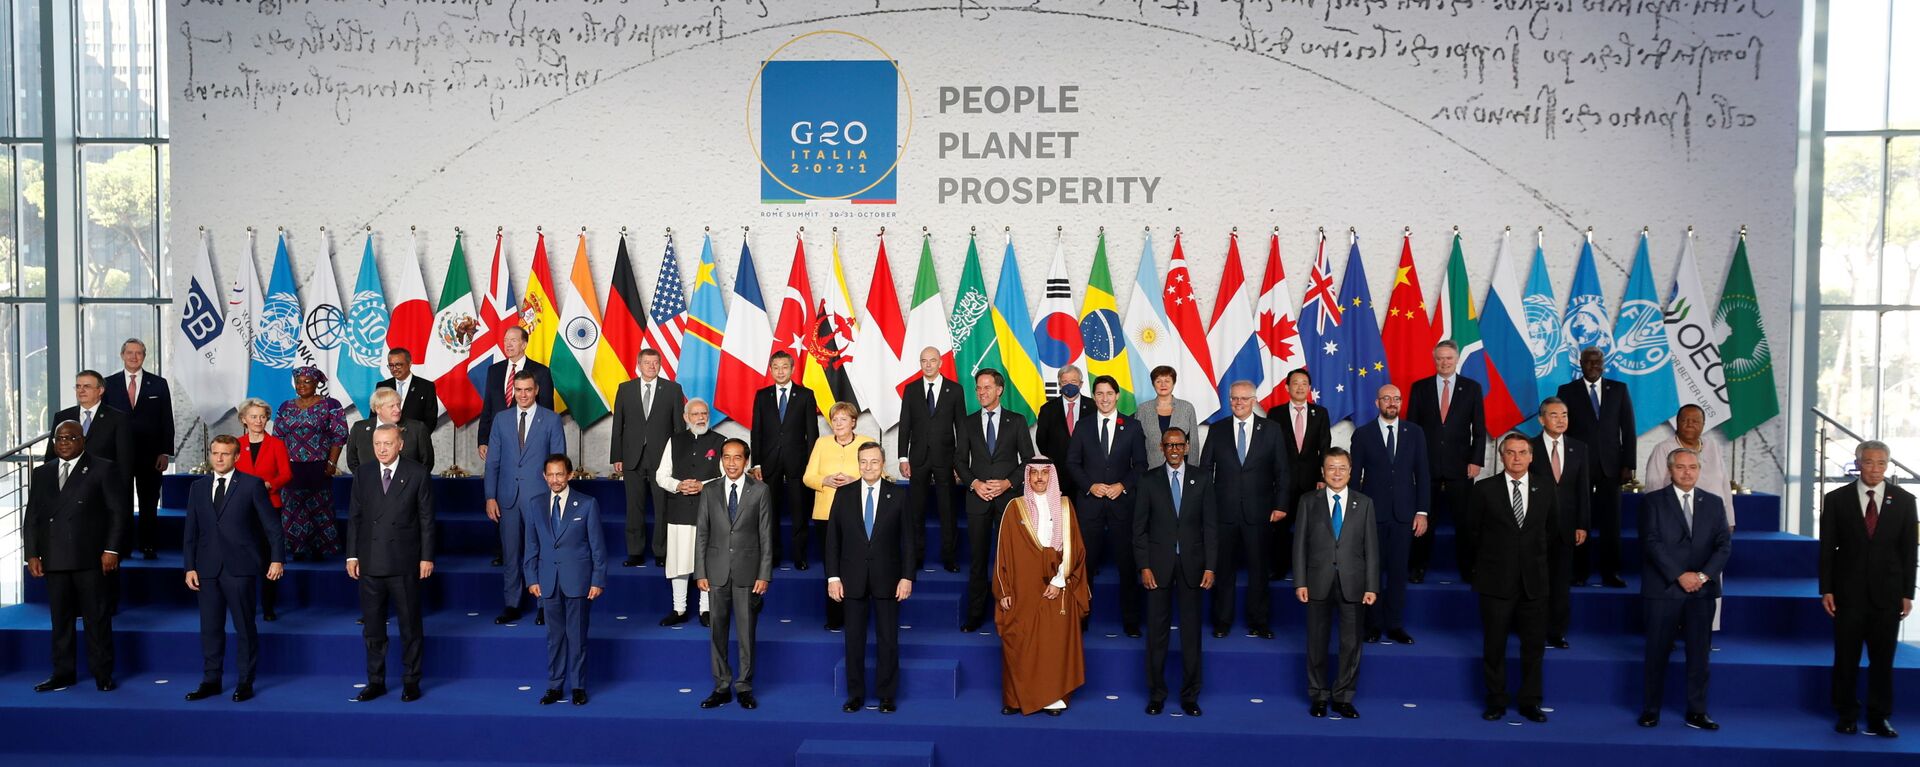 Các nguyên thủ quốc gia G20 tạo dáng trong buổi chụp ảnh chung tại hội nghị thượng đỉnh G20 ở Rome, Ý - Sputnik Việt Nam, 1920, 01.11.2021